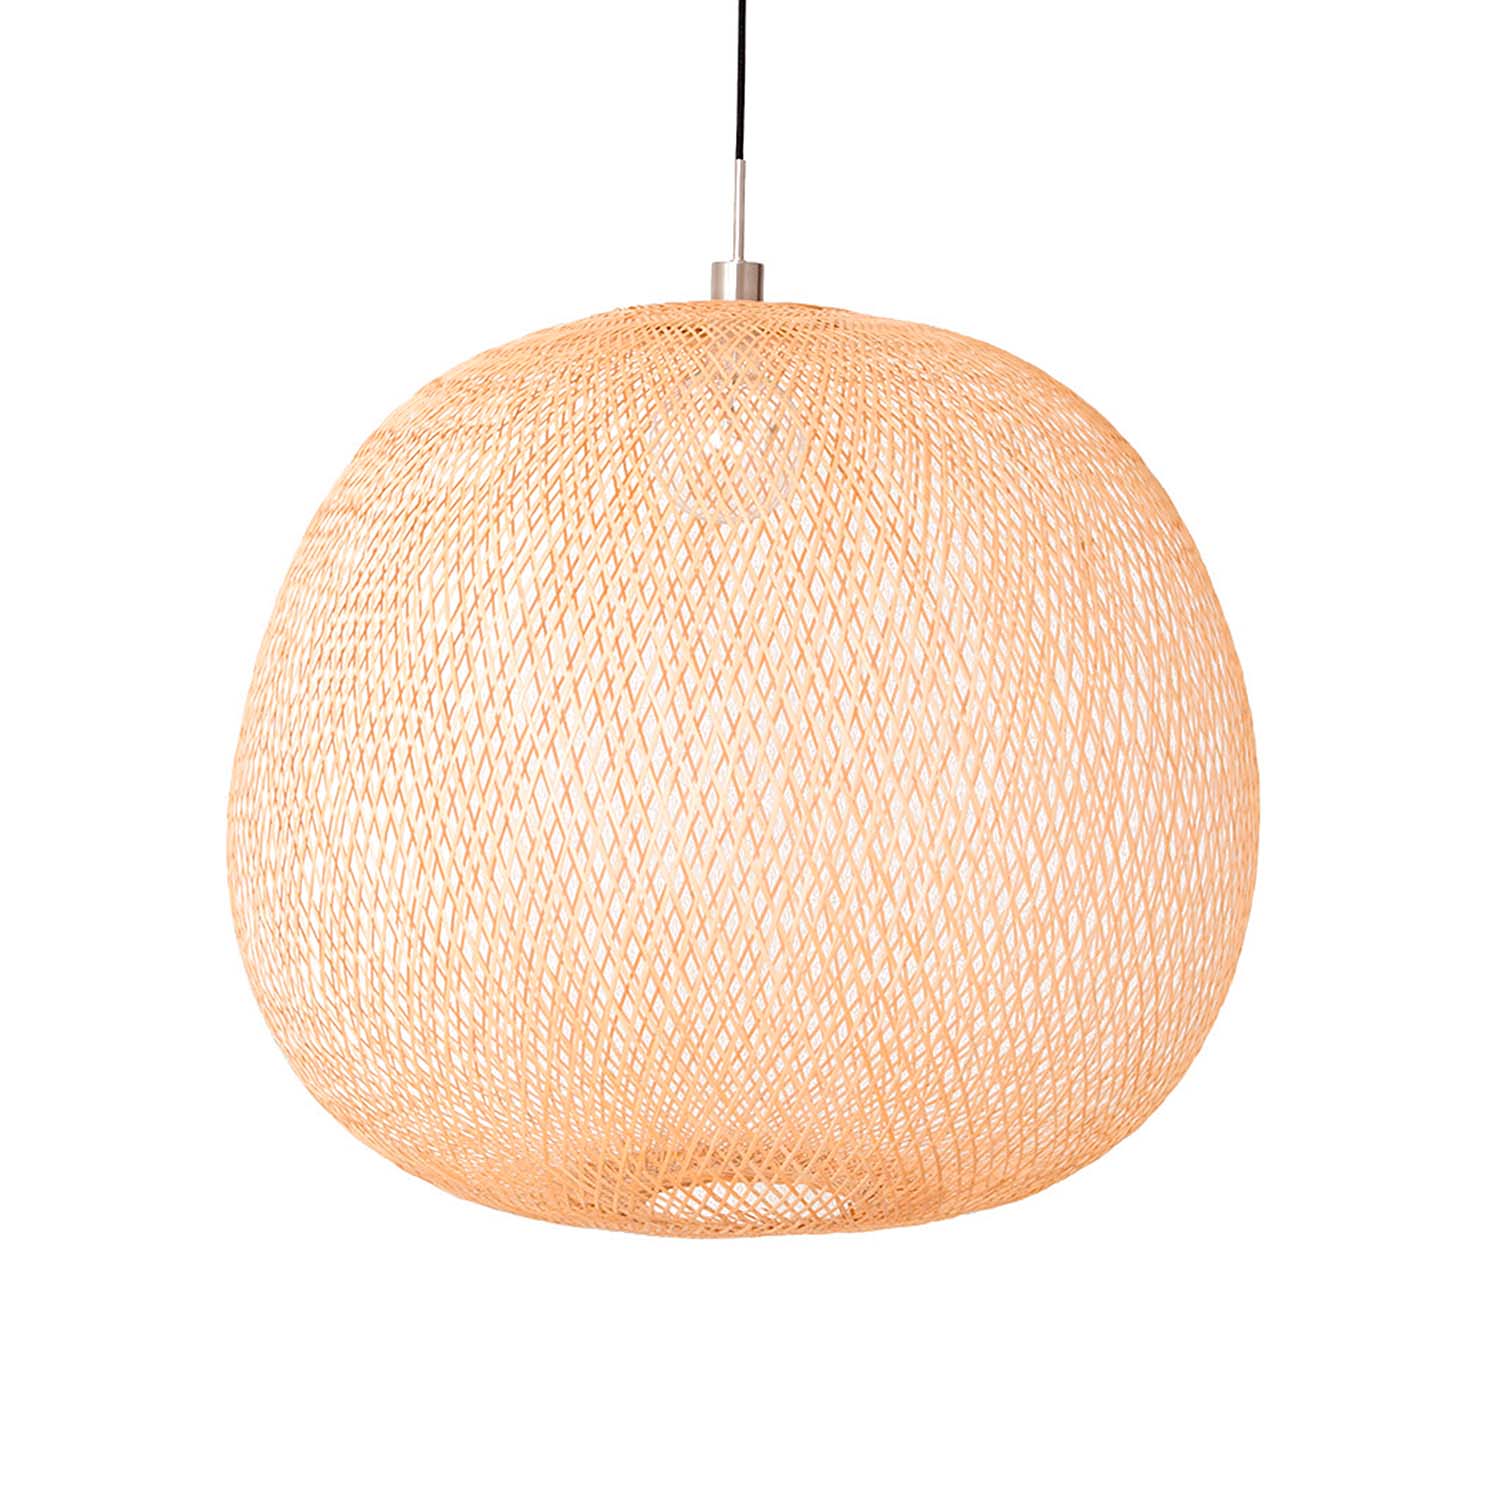 PLUM - Handmade woven natural bamboo ball pendant light